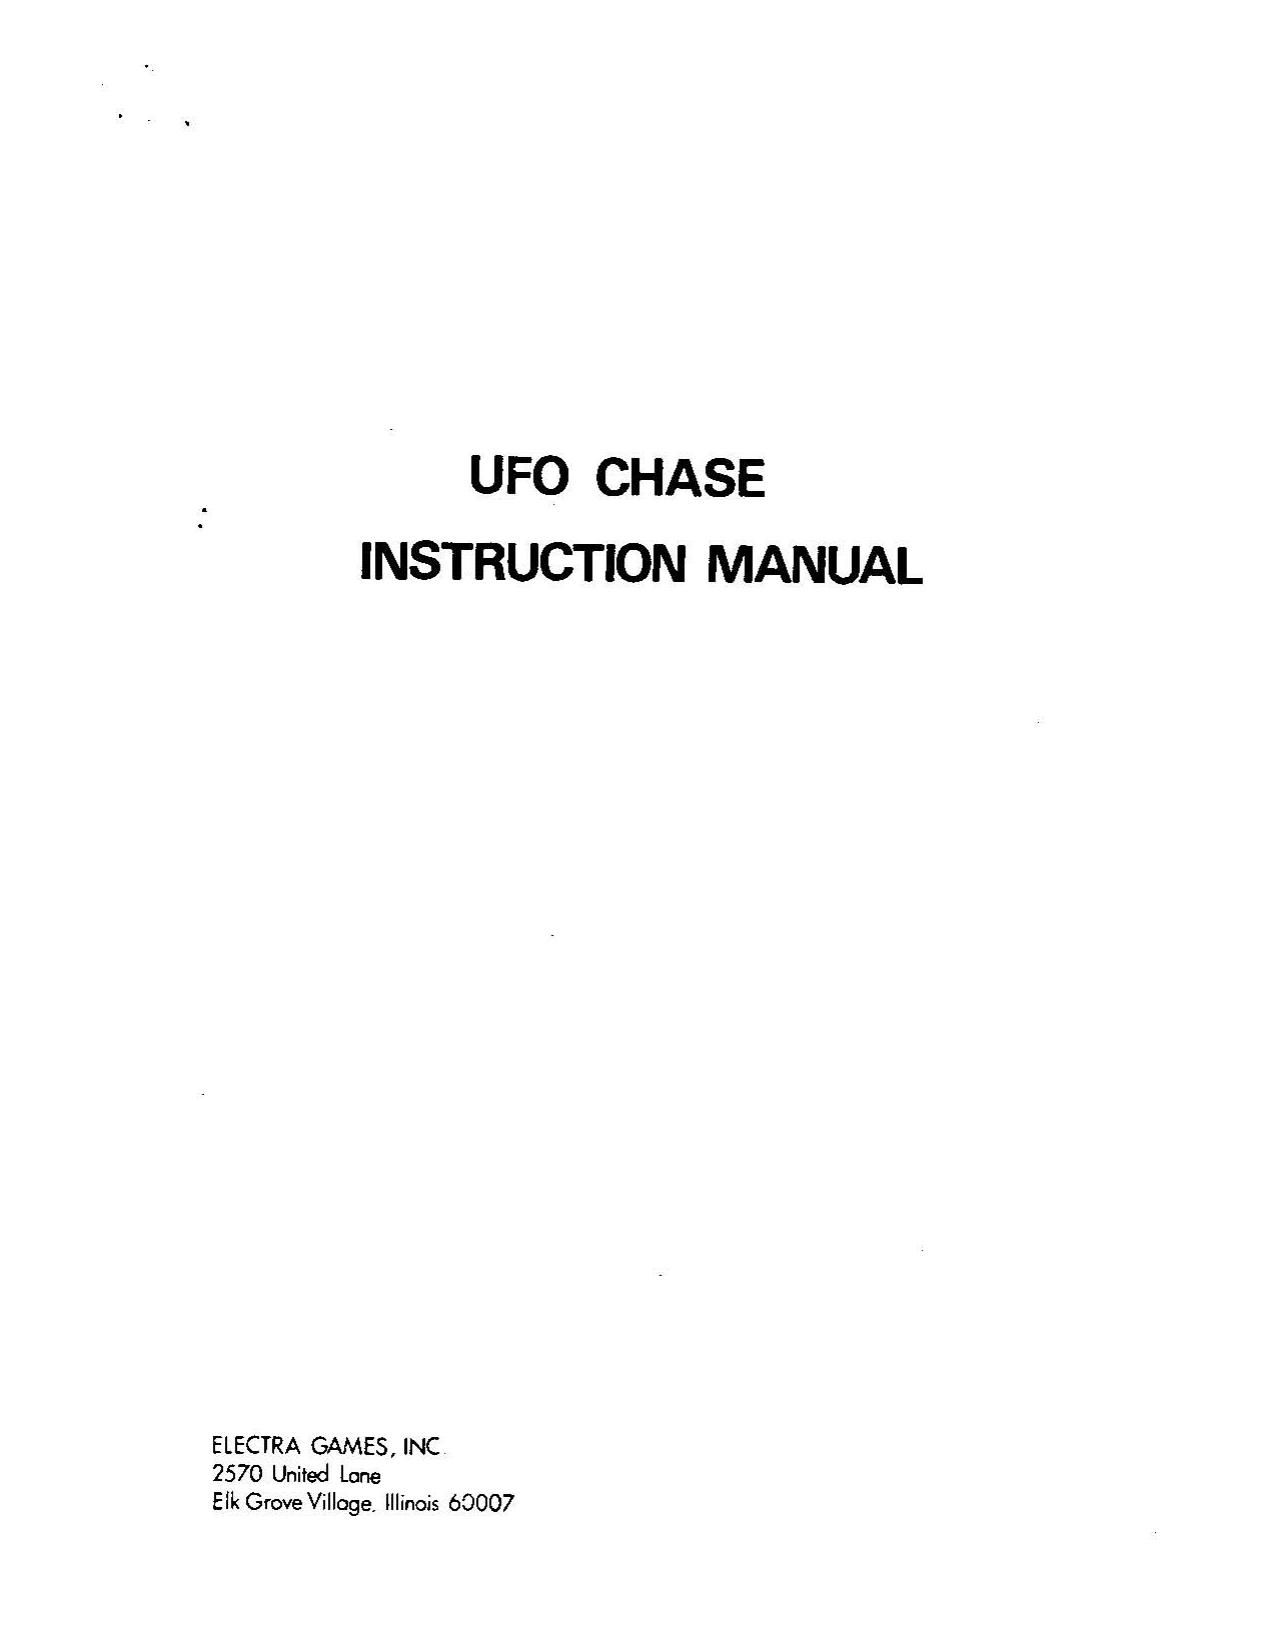 UFO Chase (Instruction) (U)